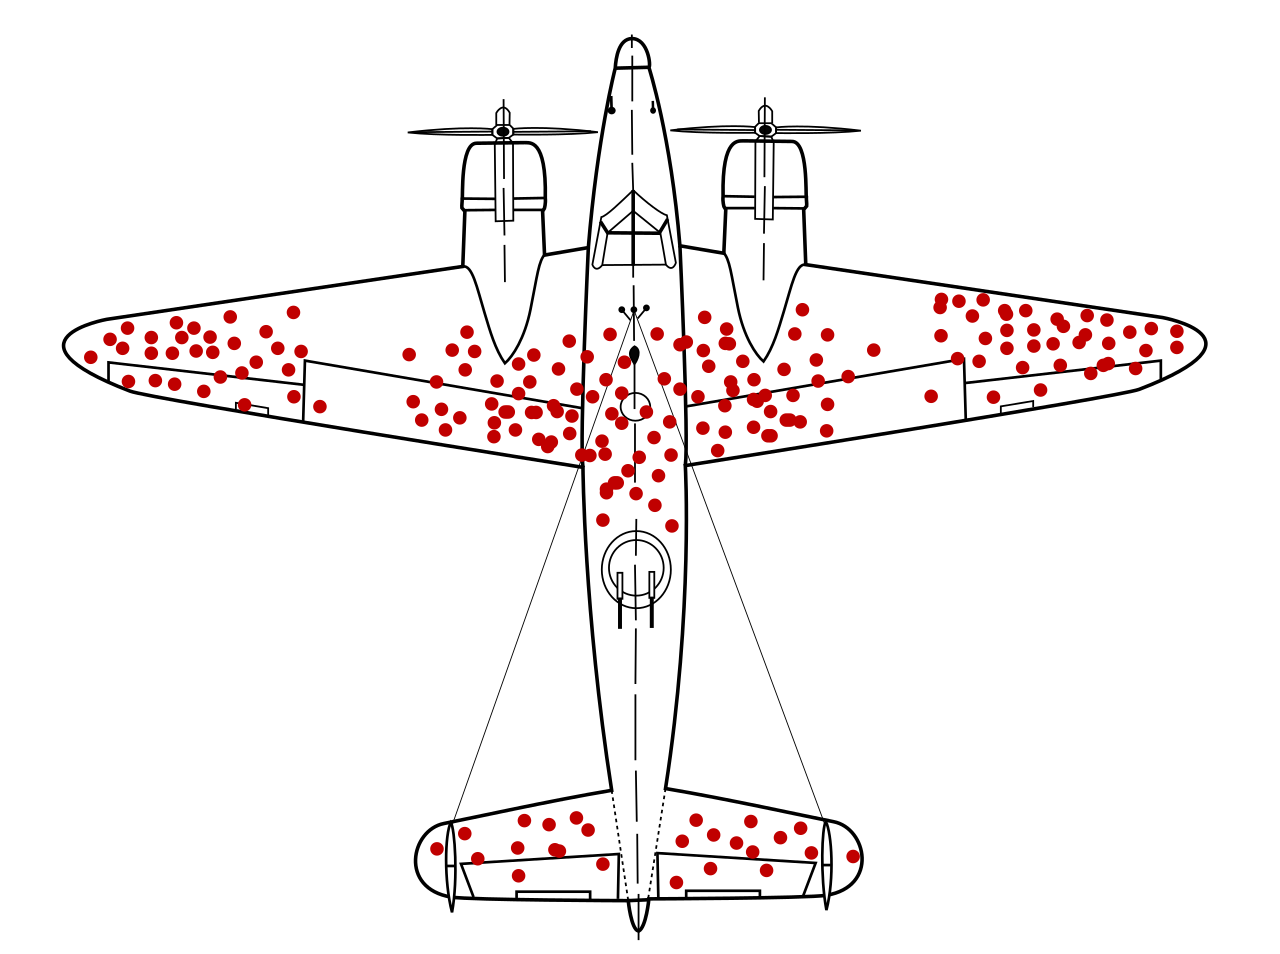 Гипотетический пример распределения попаданий в бомбардировщик времен Второй мировой войны.